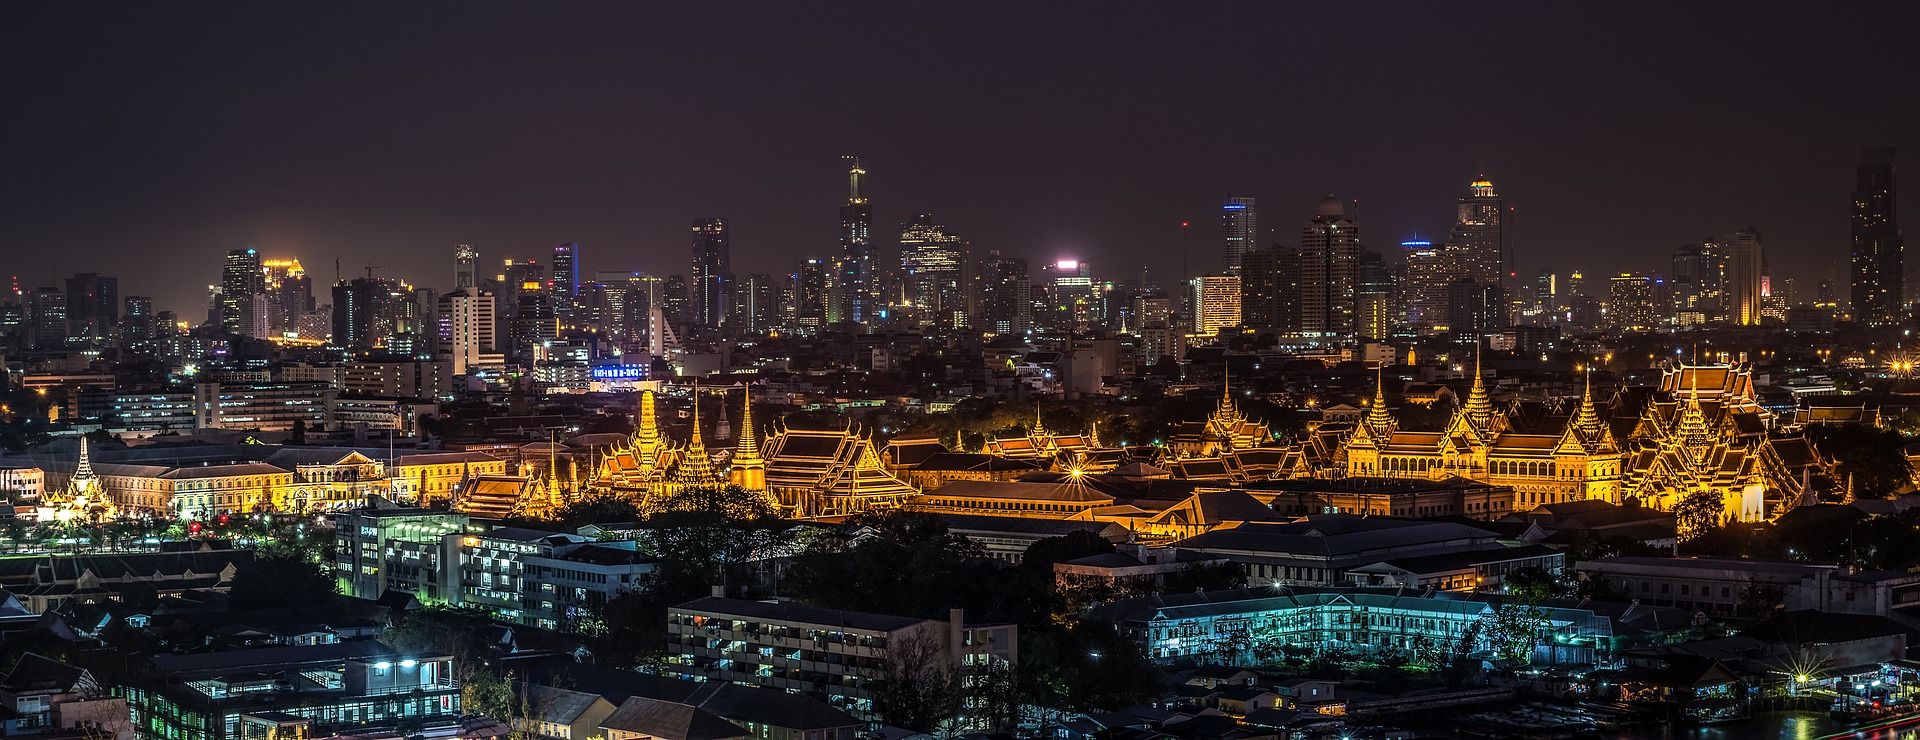 לפי מאסטרקארד בנגקוק היא העיר המתוירת ביותר בעולם. צילום pixabay